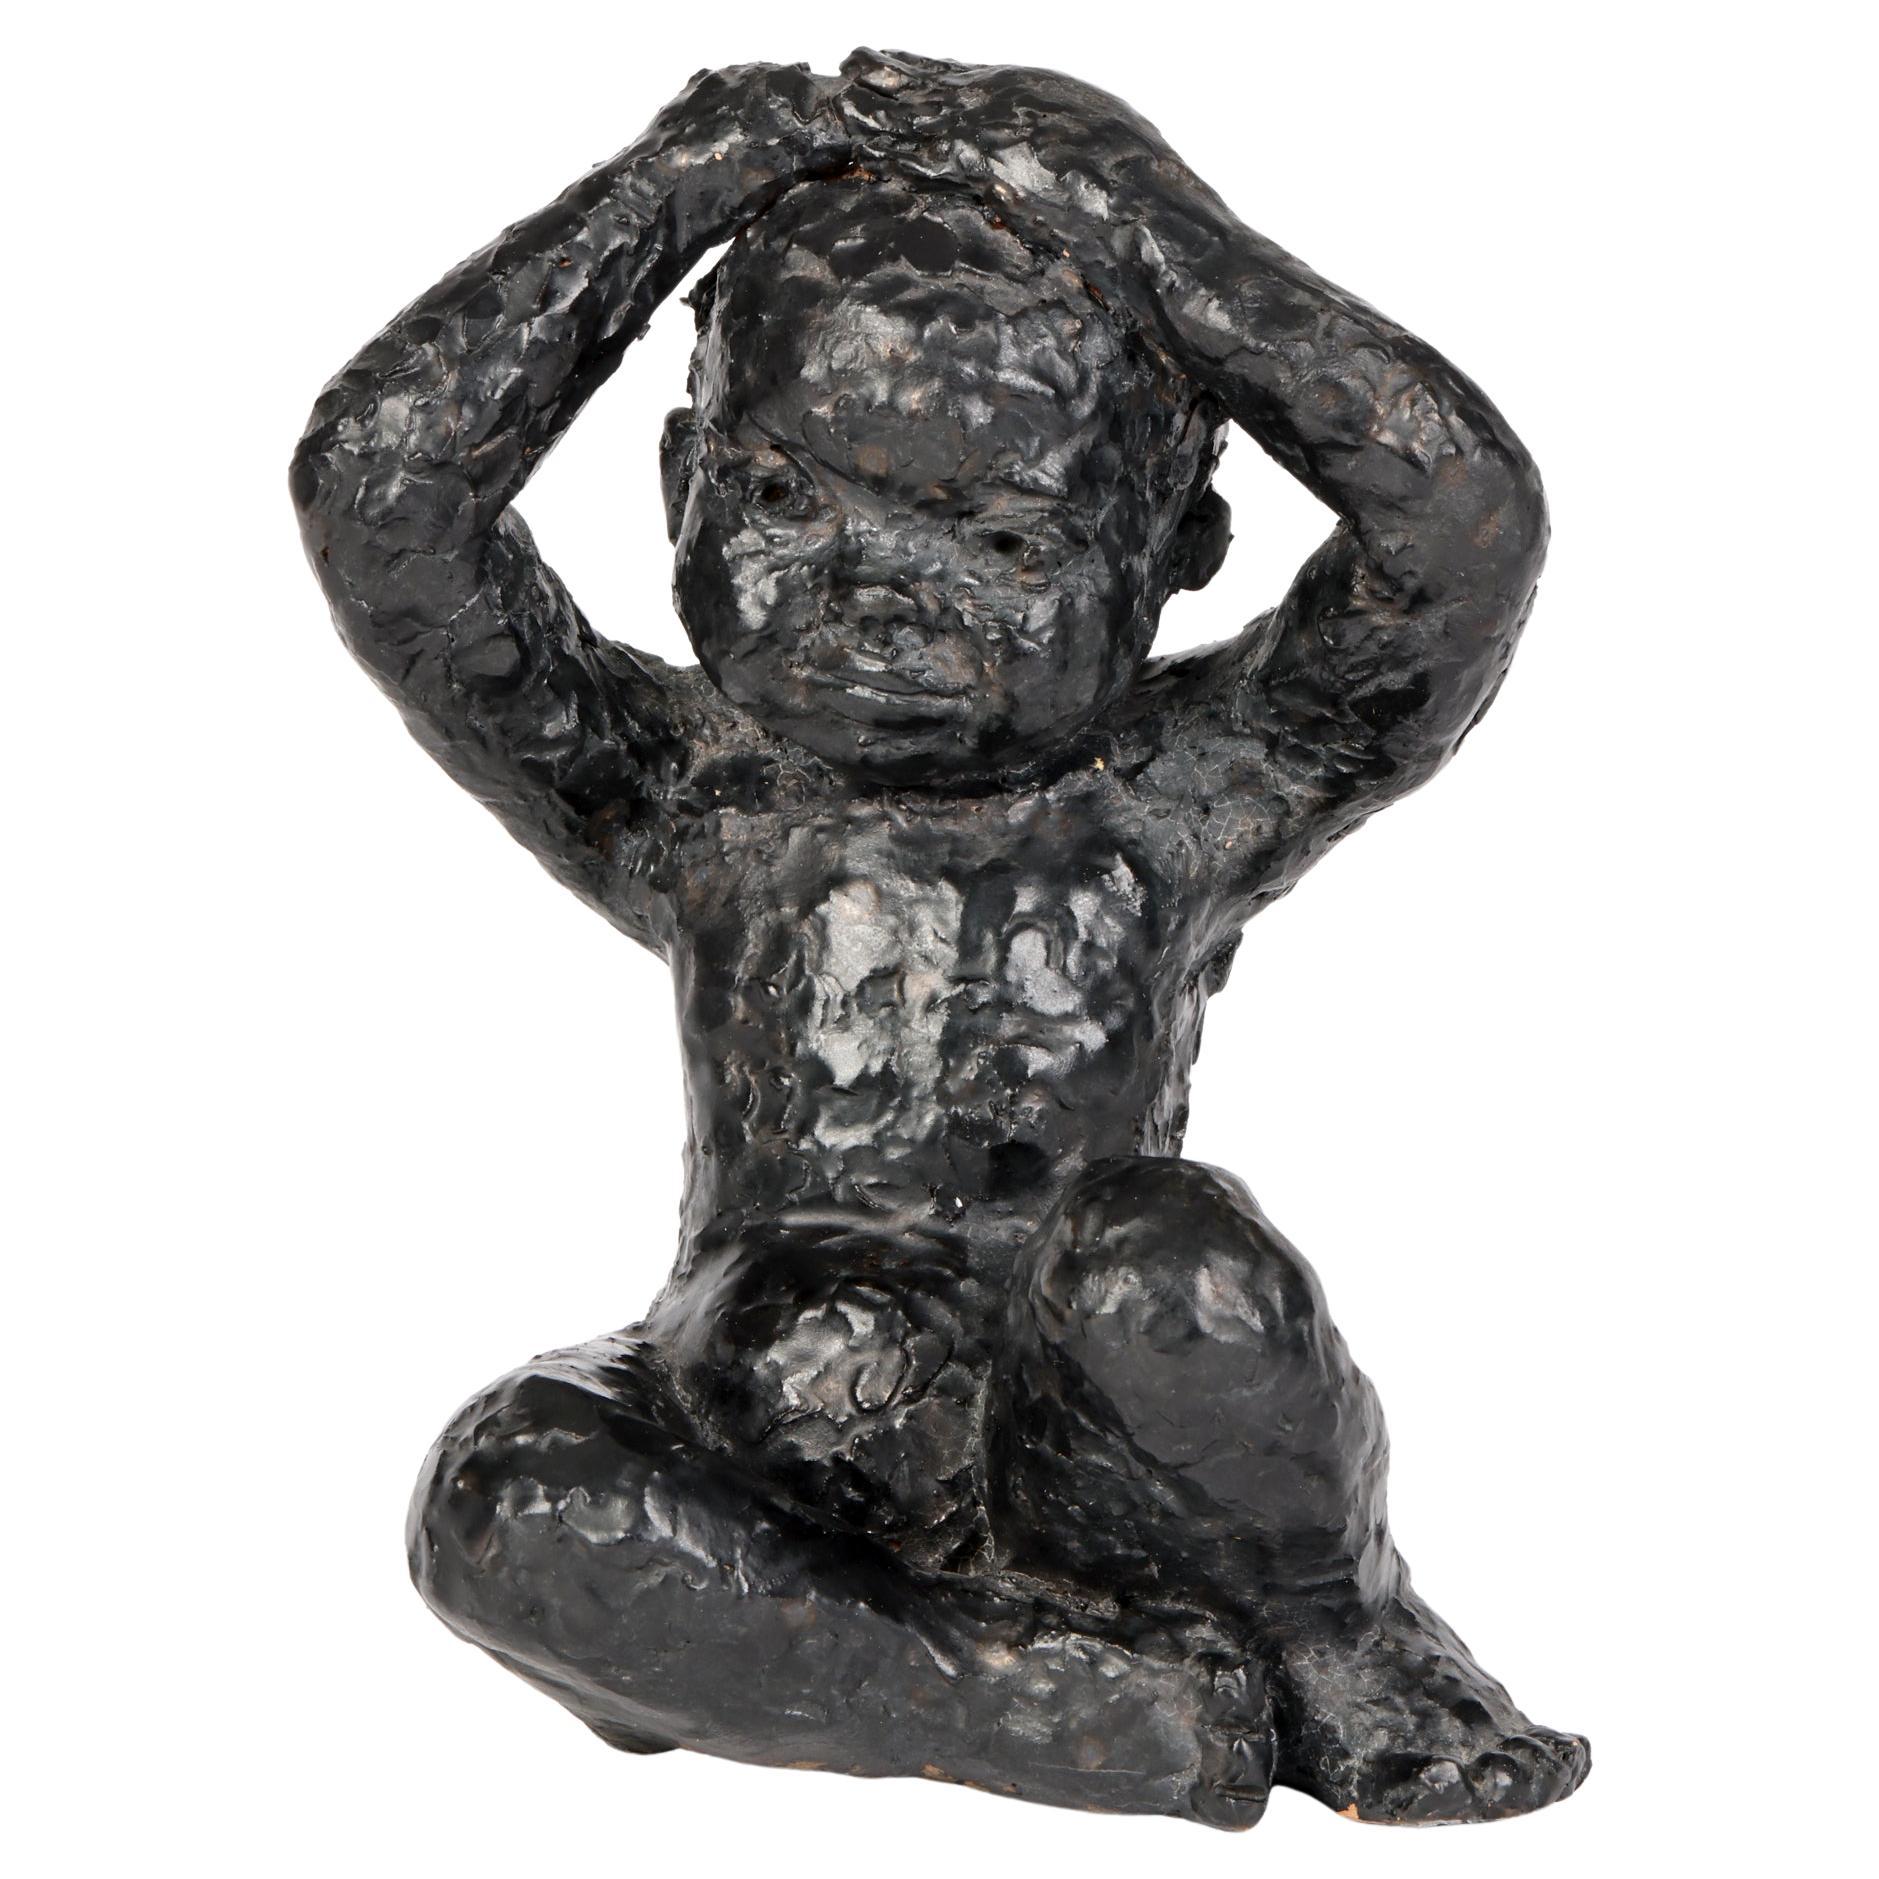 George West Studio Pottery Sculpture d'enfant assis à glaçure noire datée de 1969